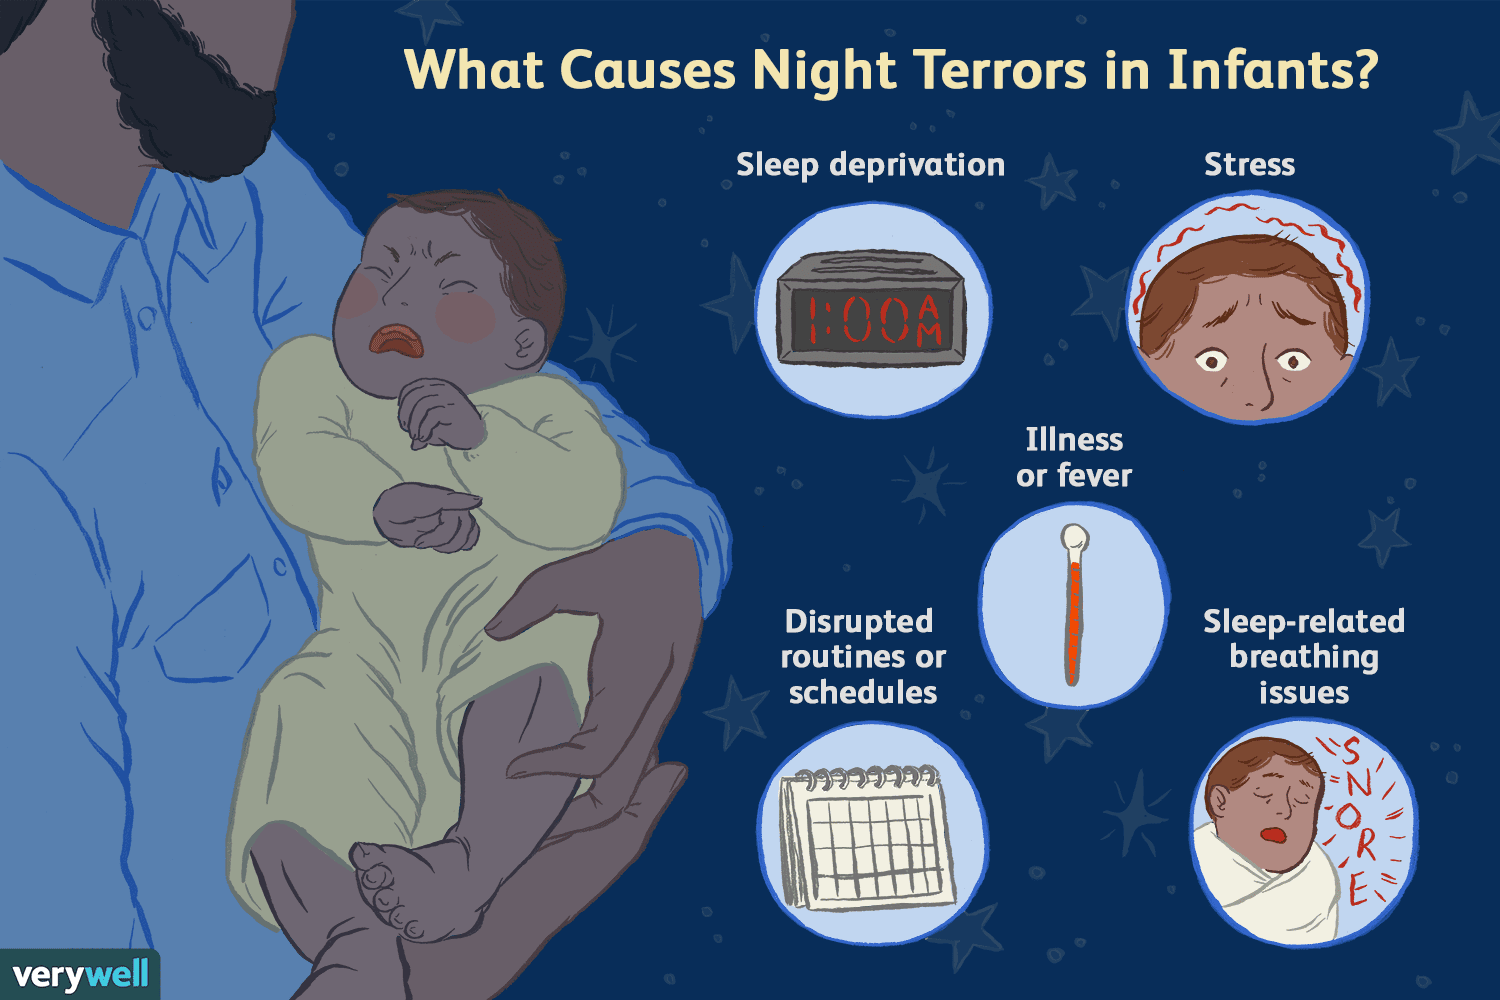 How long do night terrors usually last?